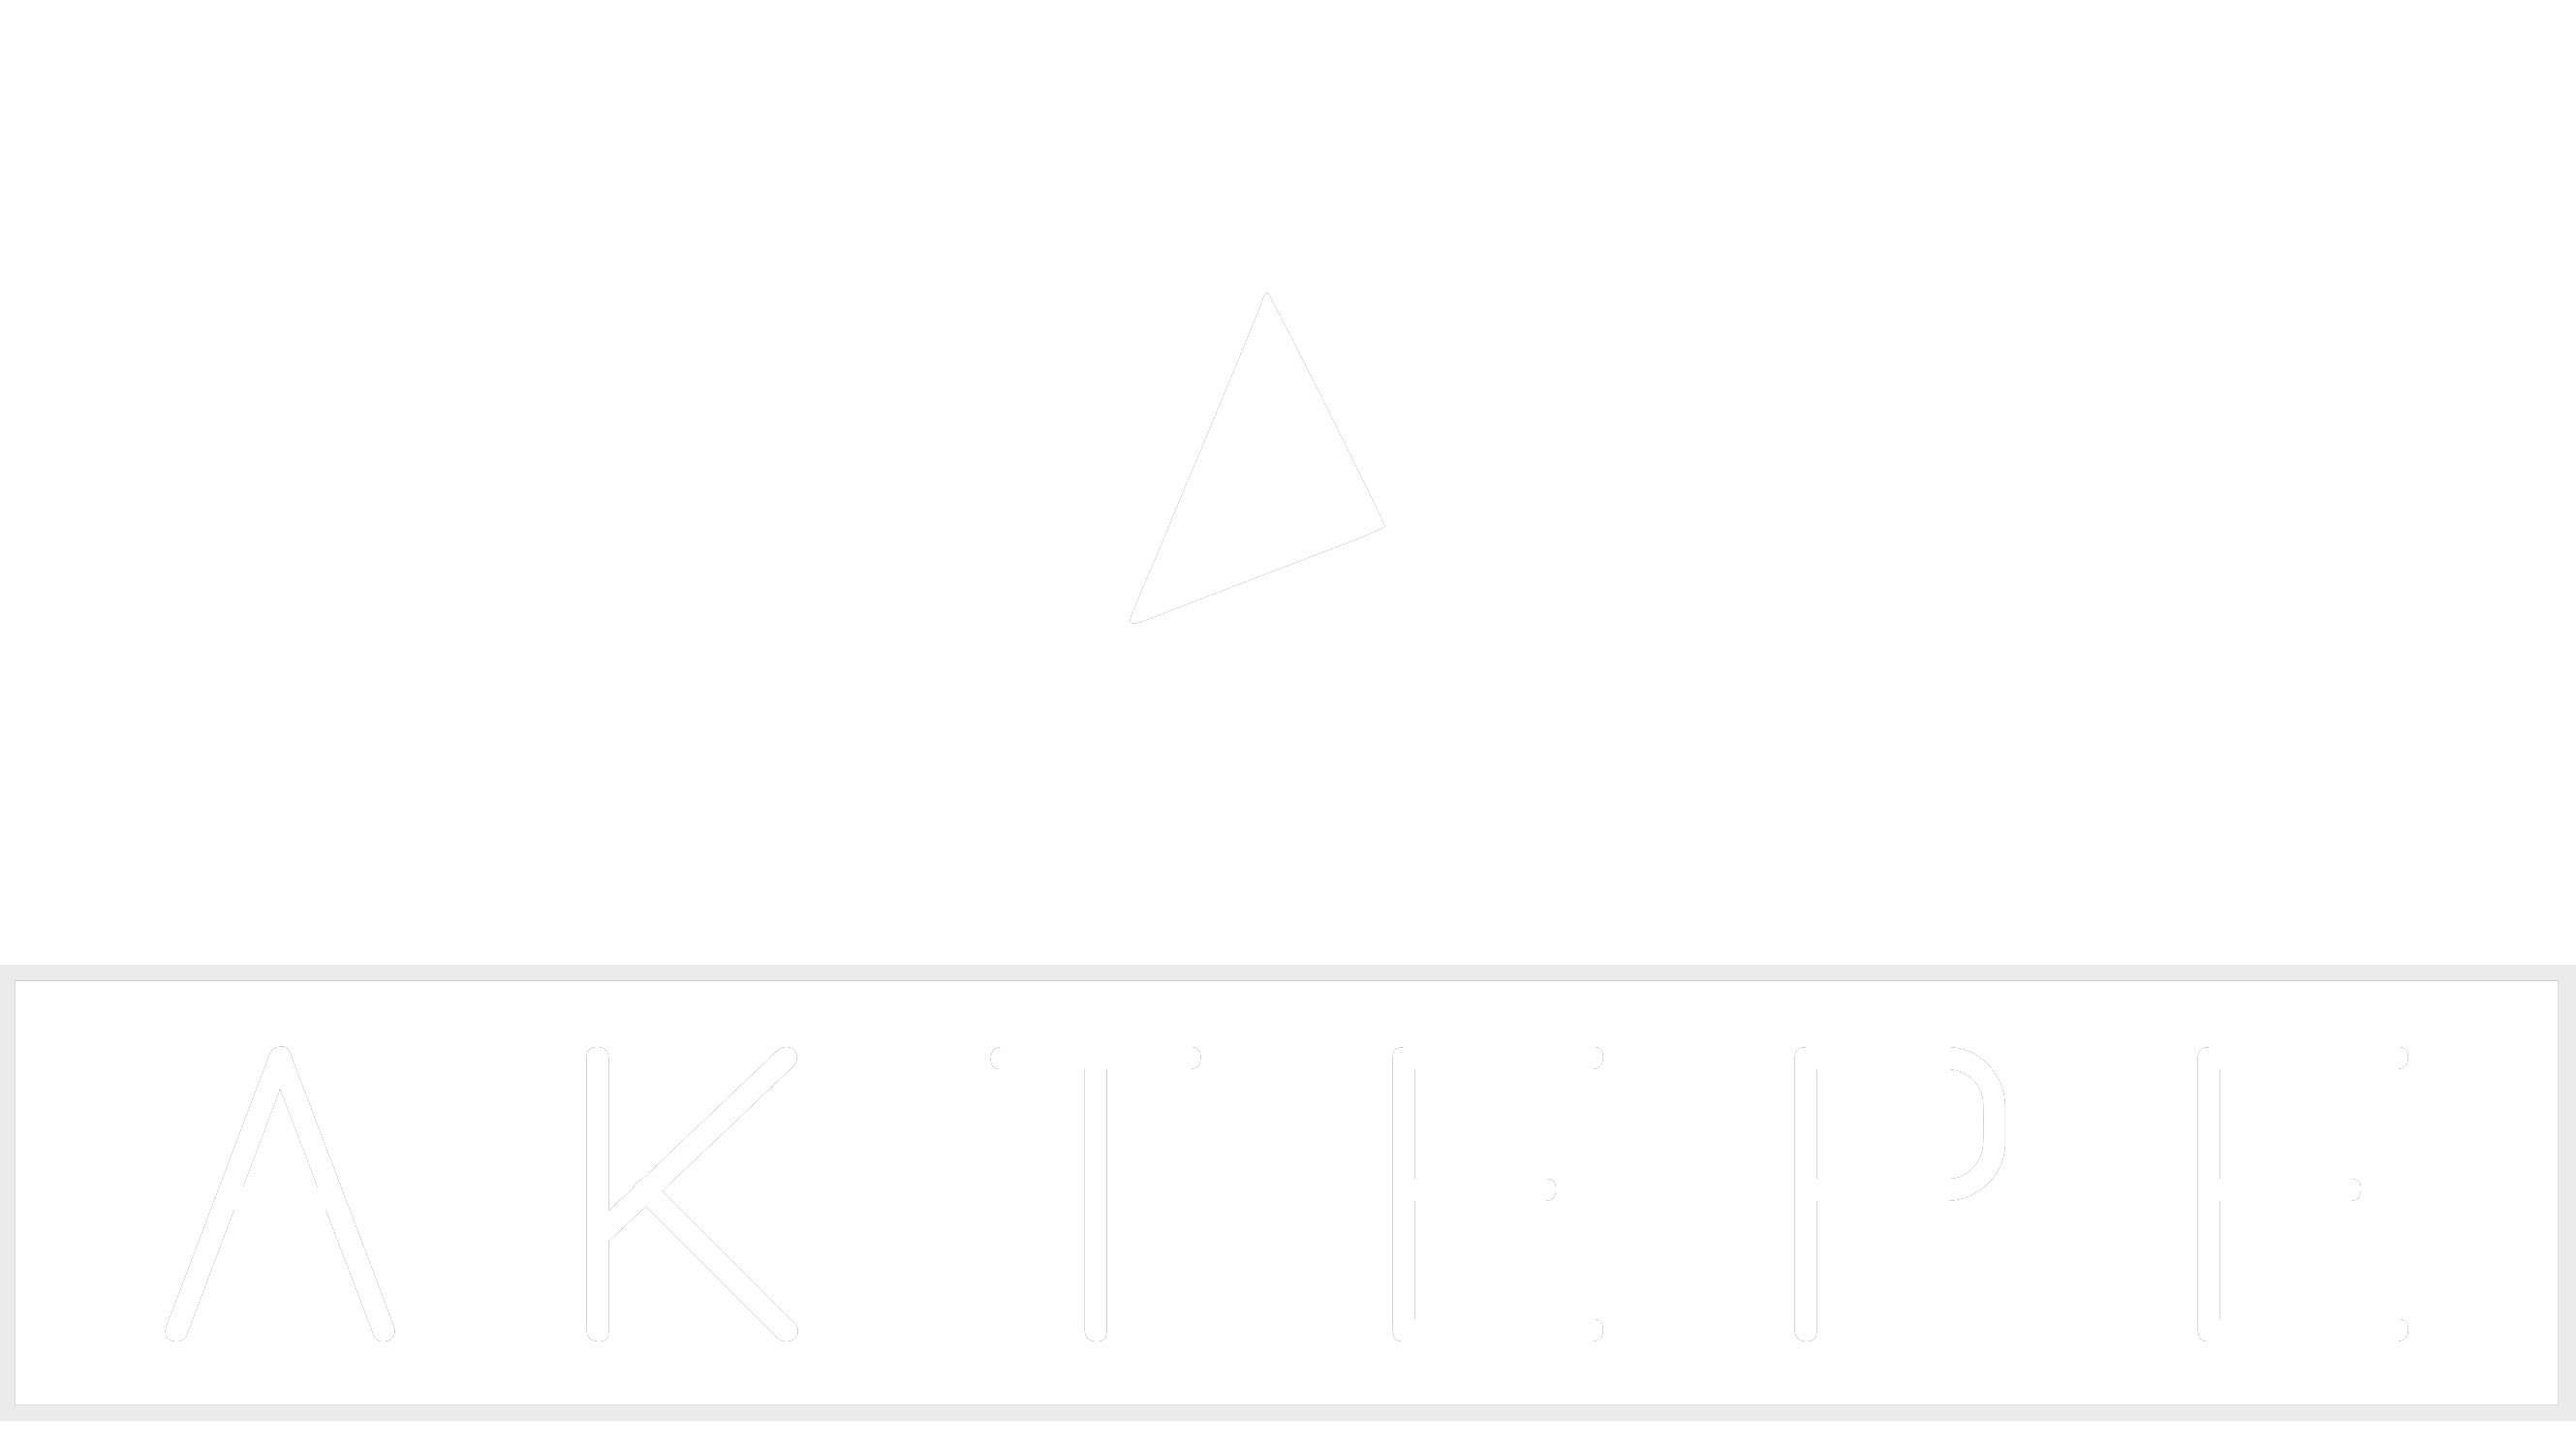 Skoda - Aktepe Shop - Oto Müzik Görüntü Navigasyon Sistemleri ve Teyp Çerçevesi Satış Merkezi